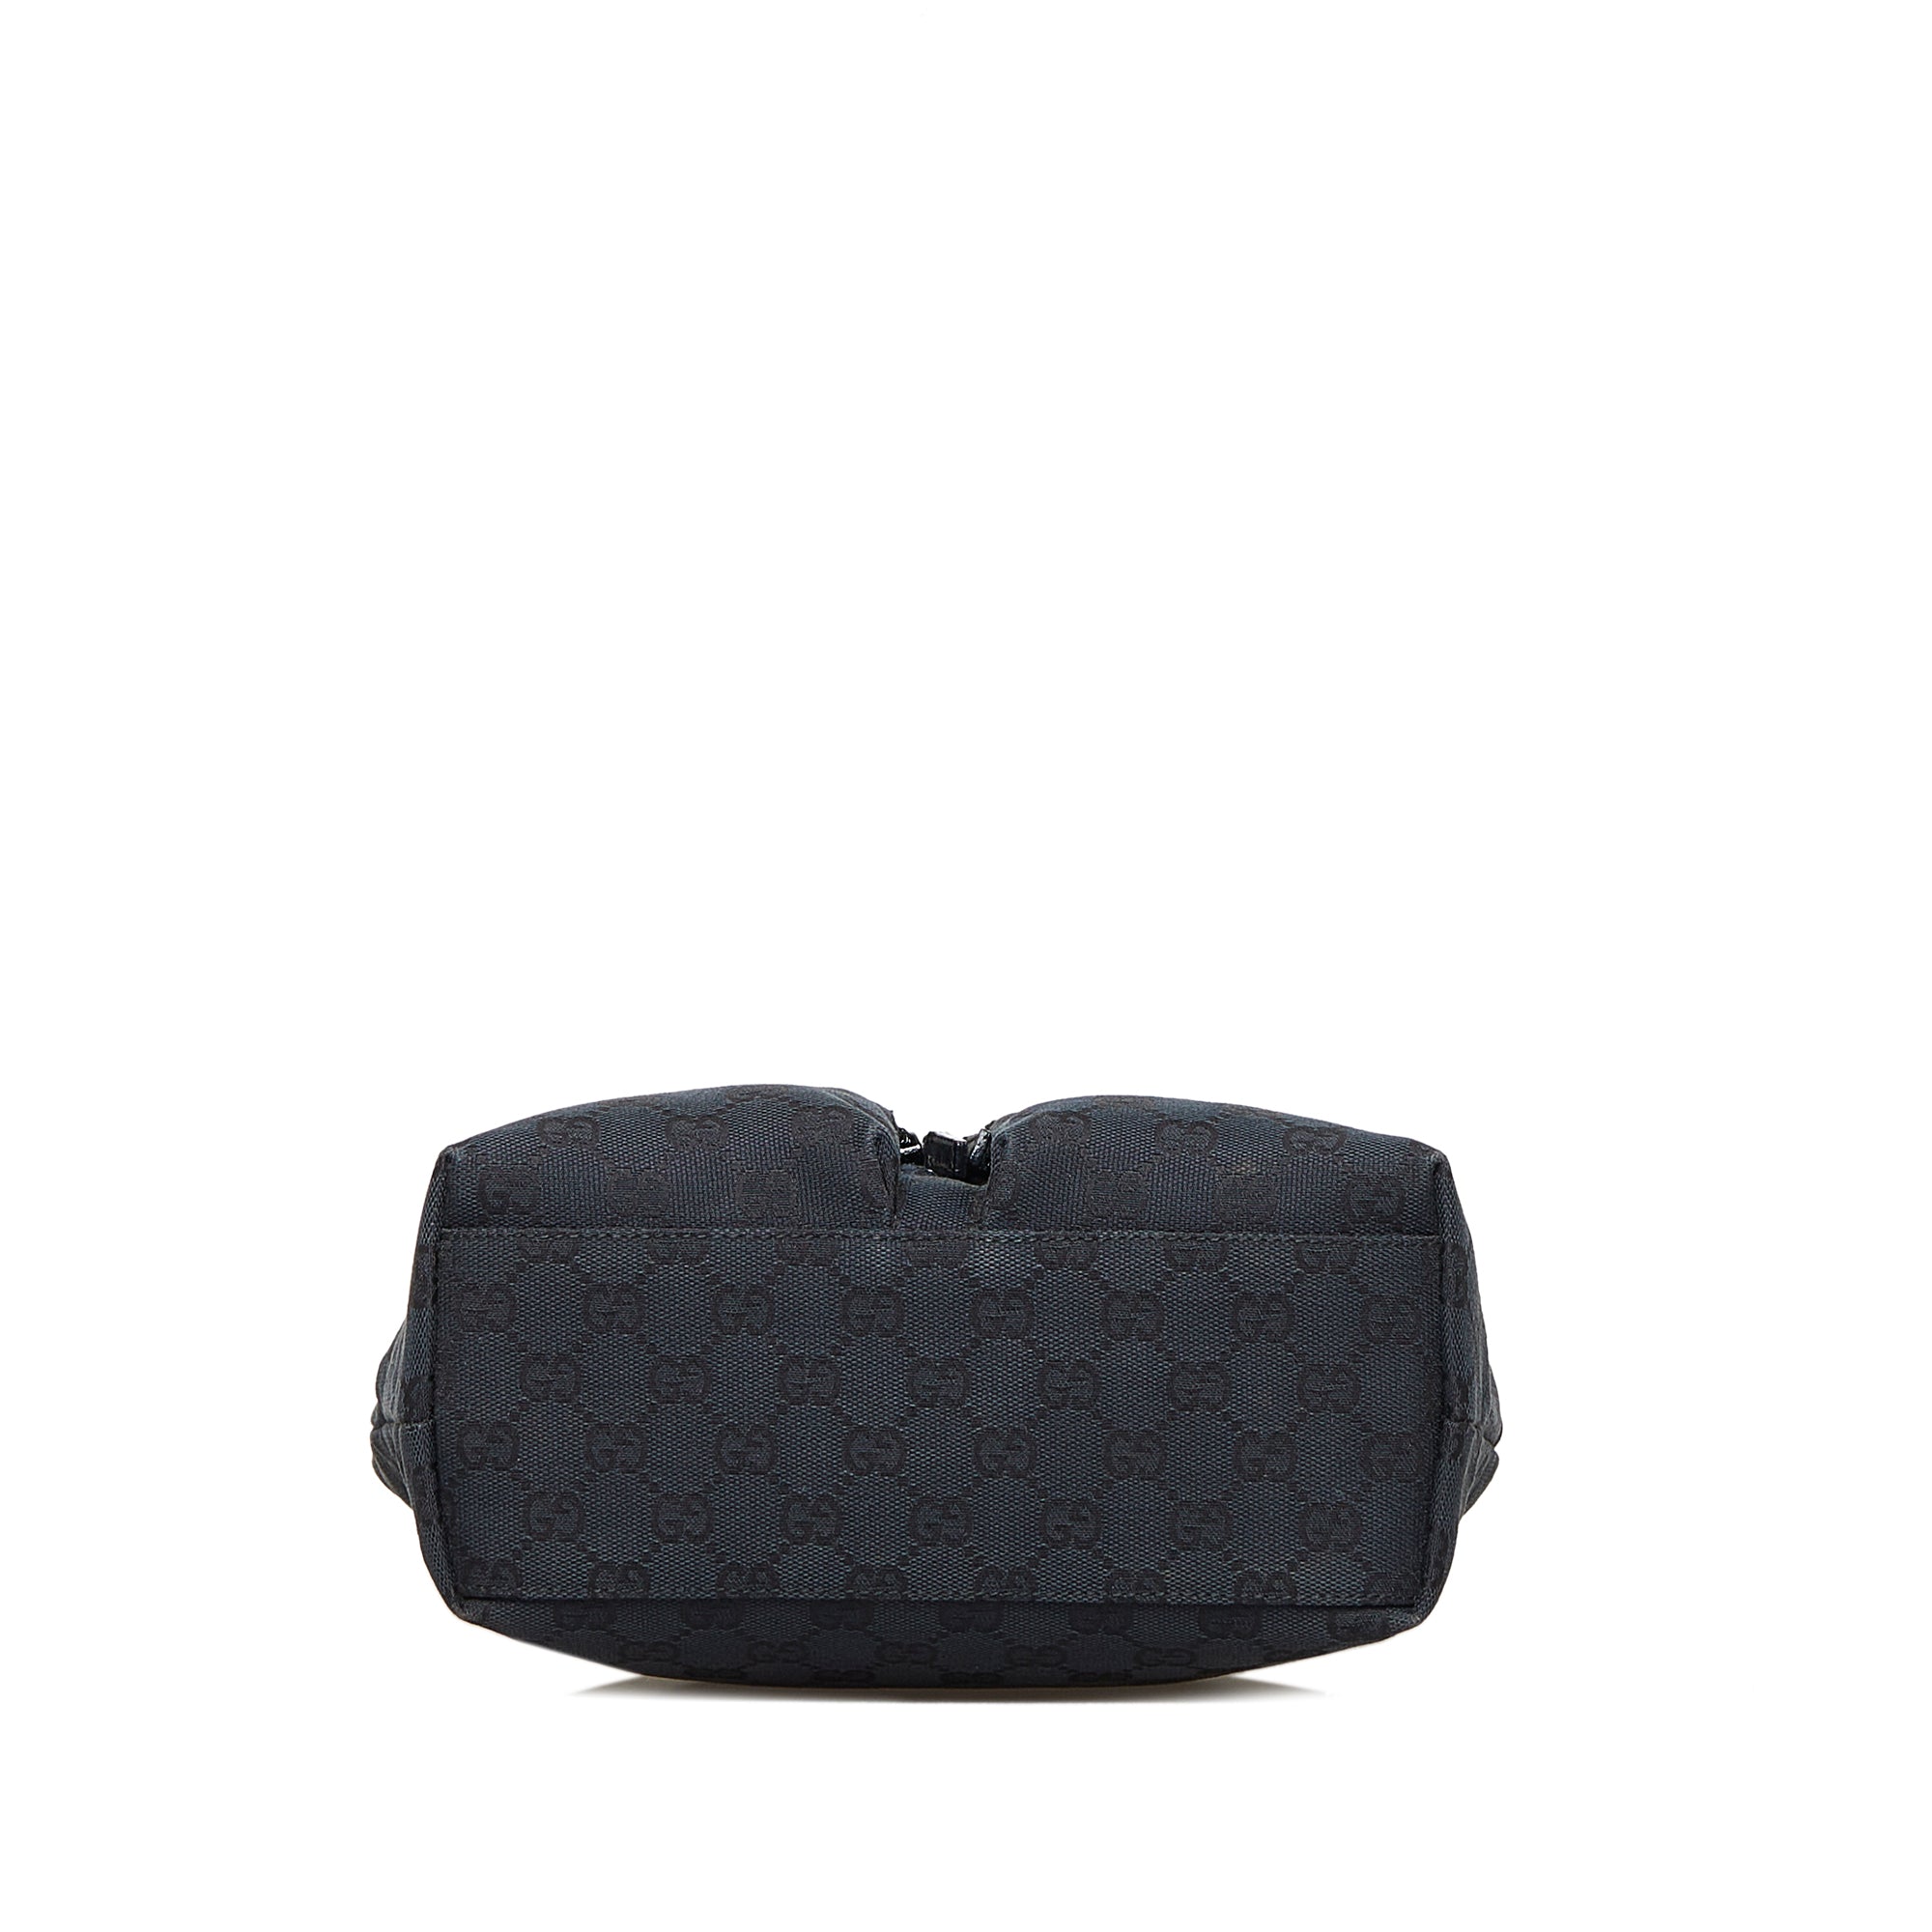 Black Gucci GG Canvas Eclipse Tote Bag – Designer Revival